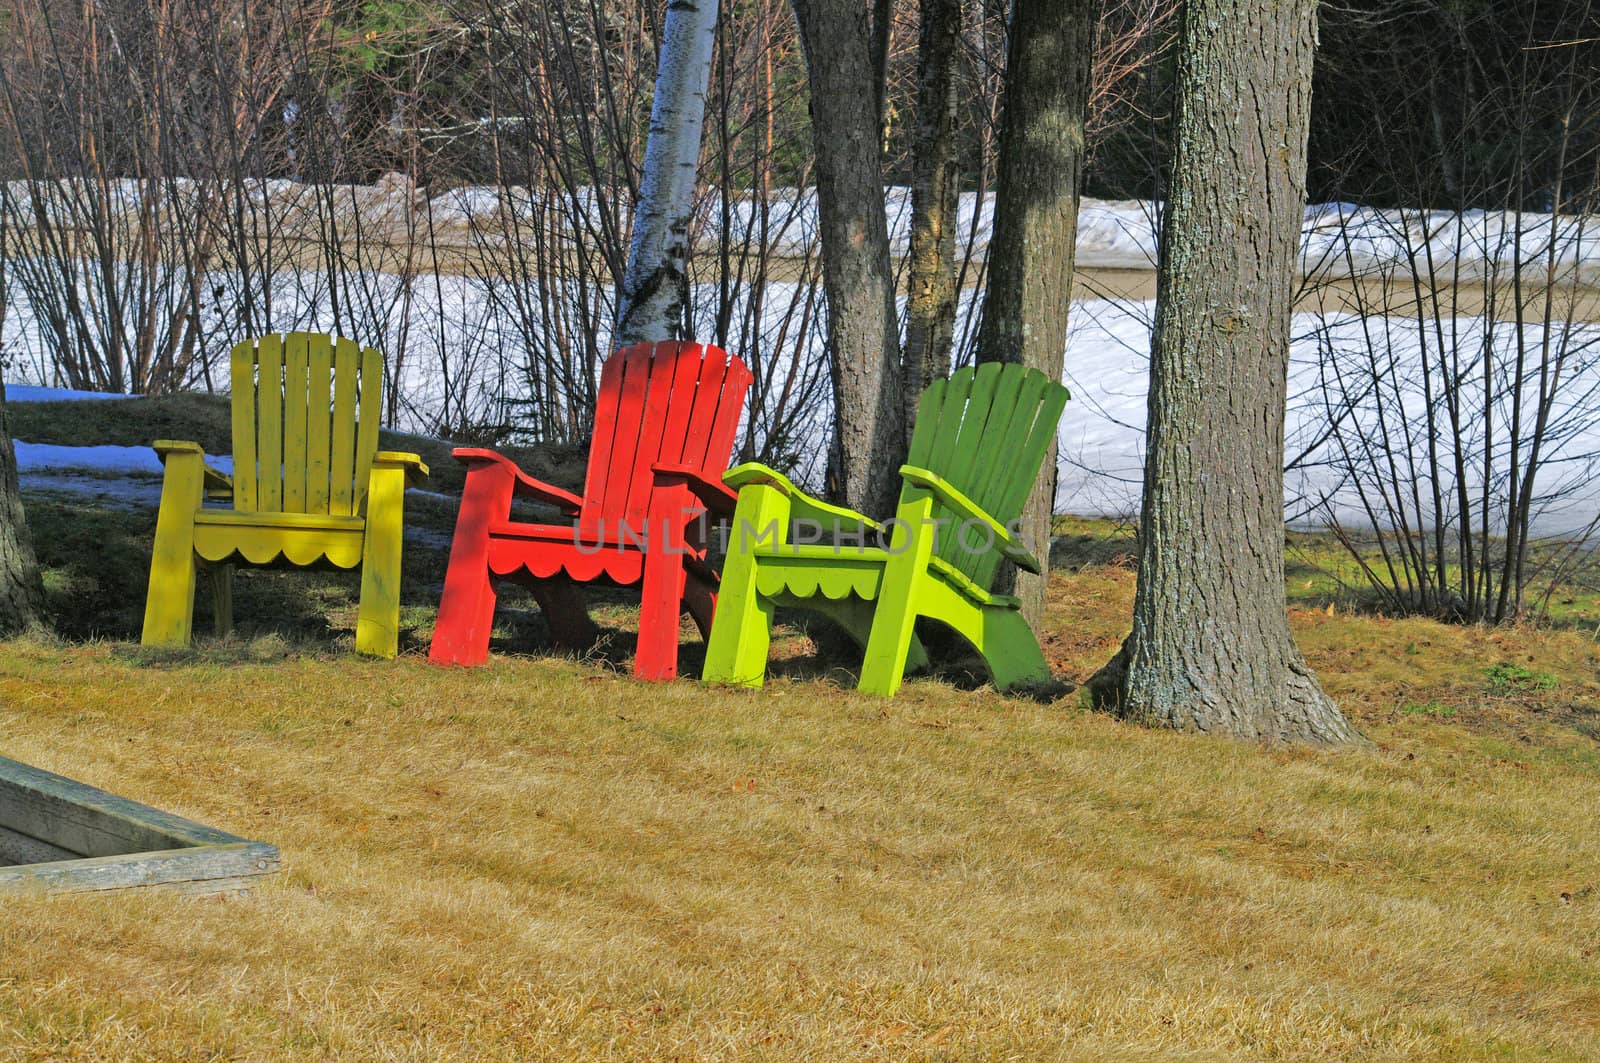 Adinrondack Chairs by edcorey